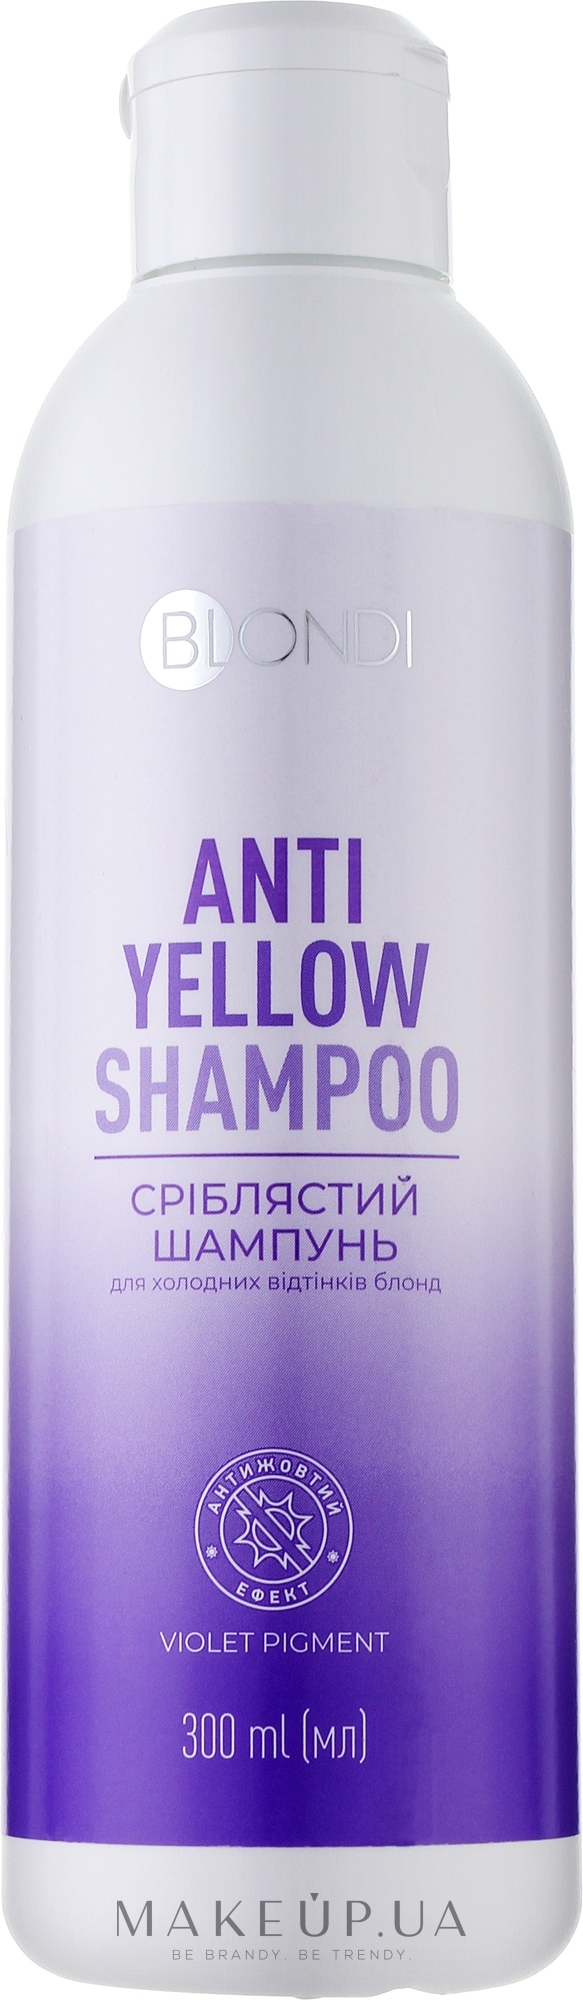 Сріблястий шампунь для холодних відтінків блонд - Unic Blondi Antiyellow Shampoo — фото 300ml